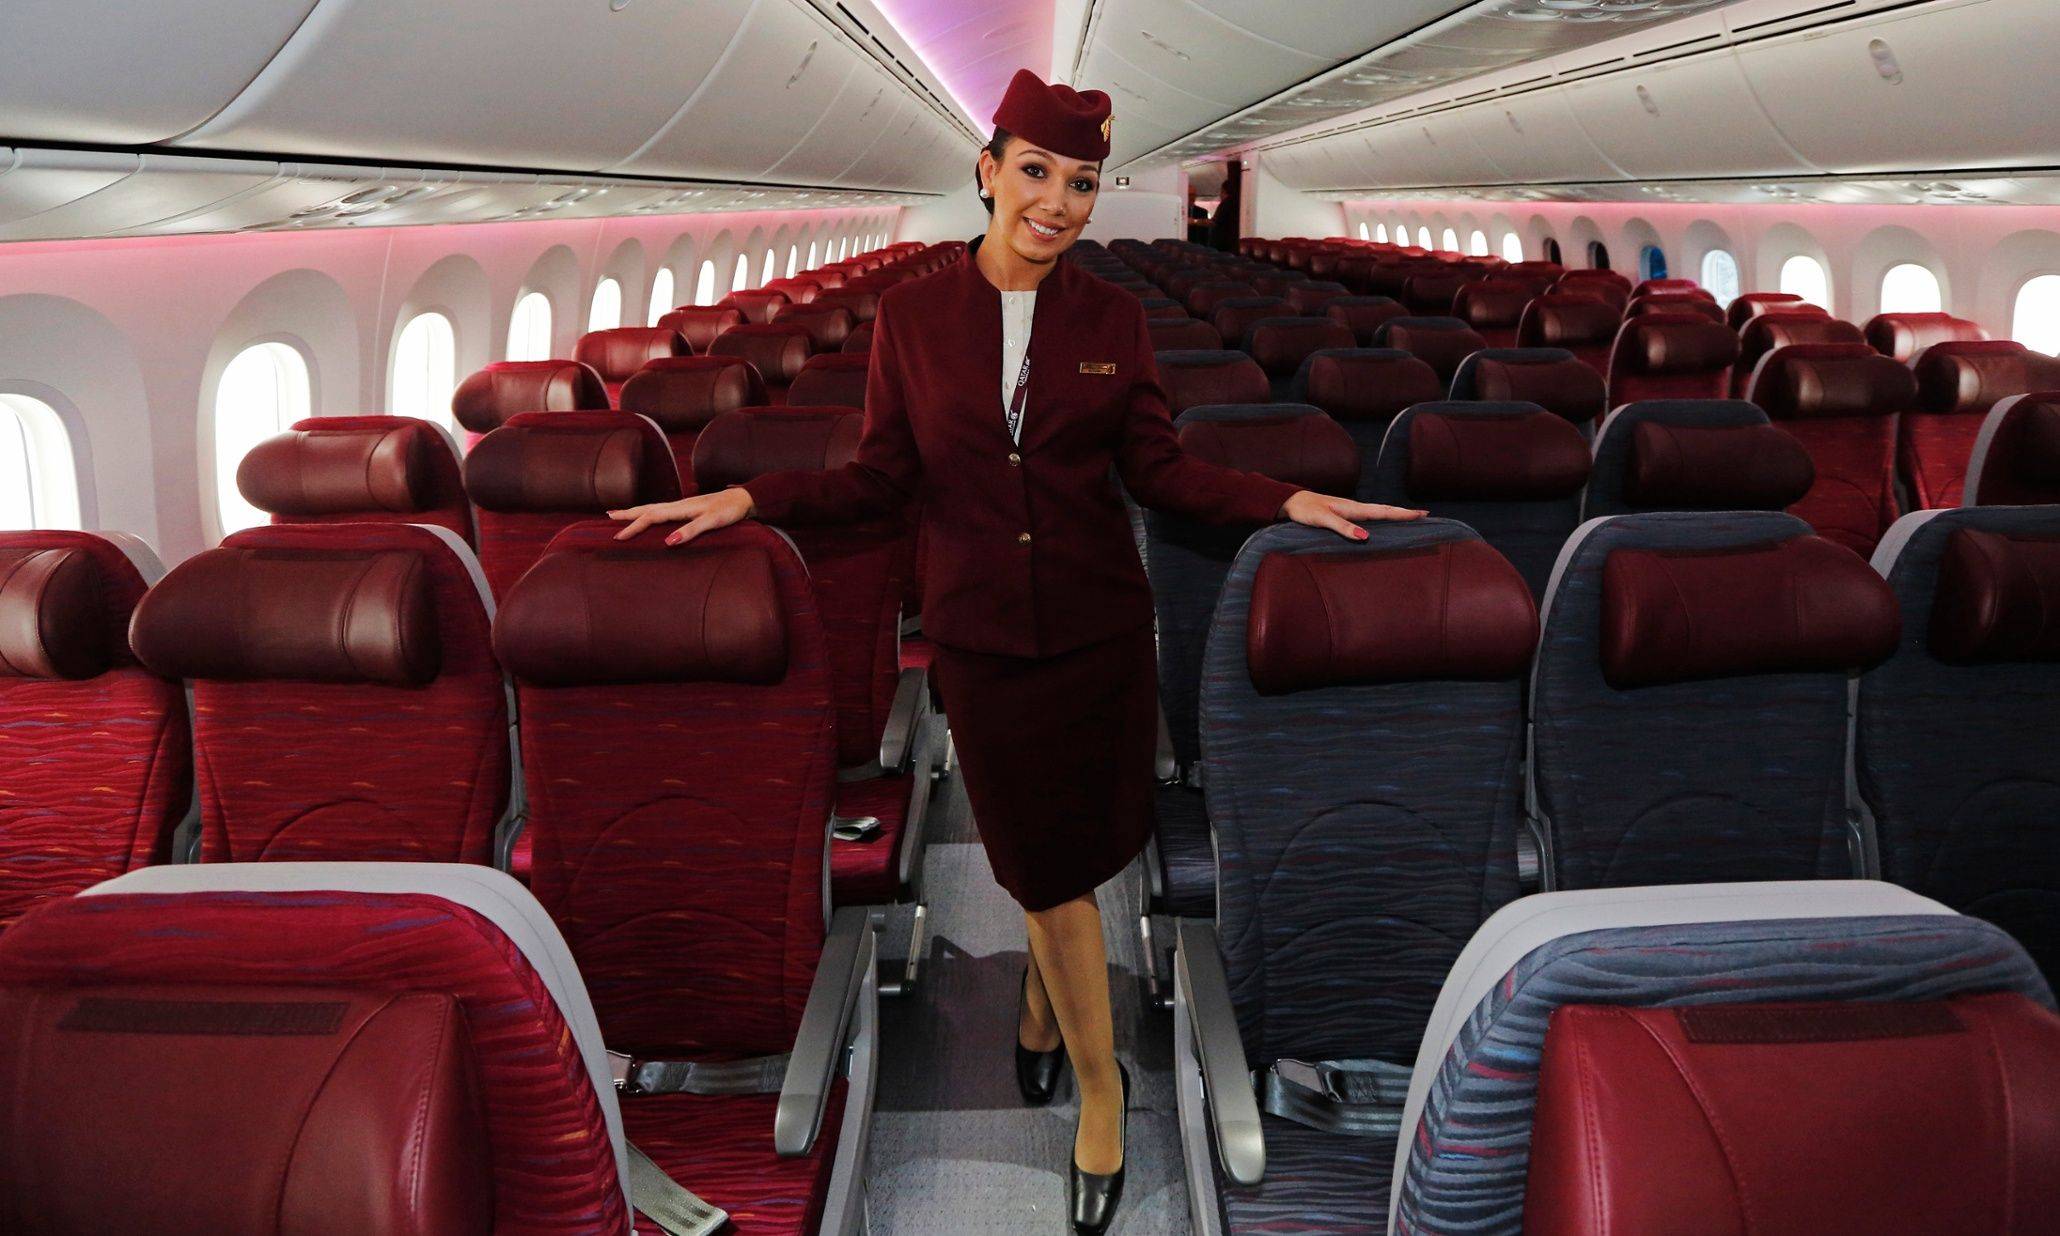 Qatar airways (катарские авиалинии) — национальная авиакомпания катара